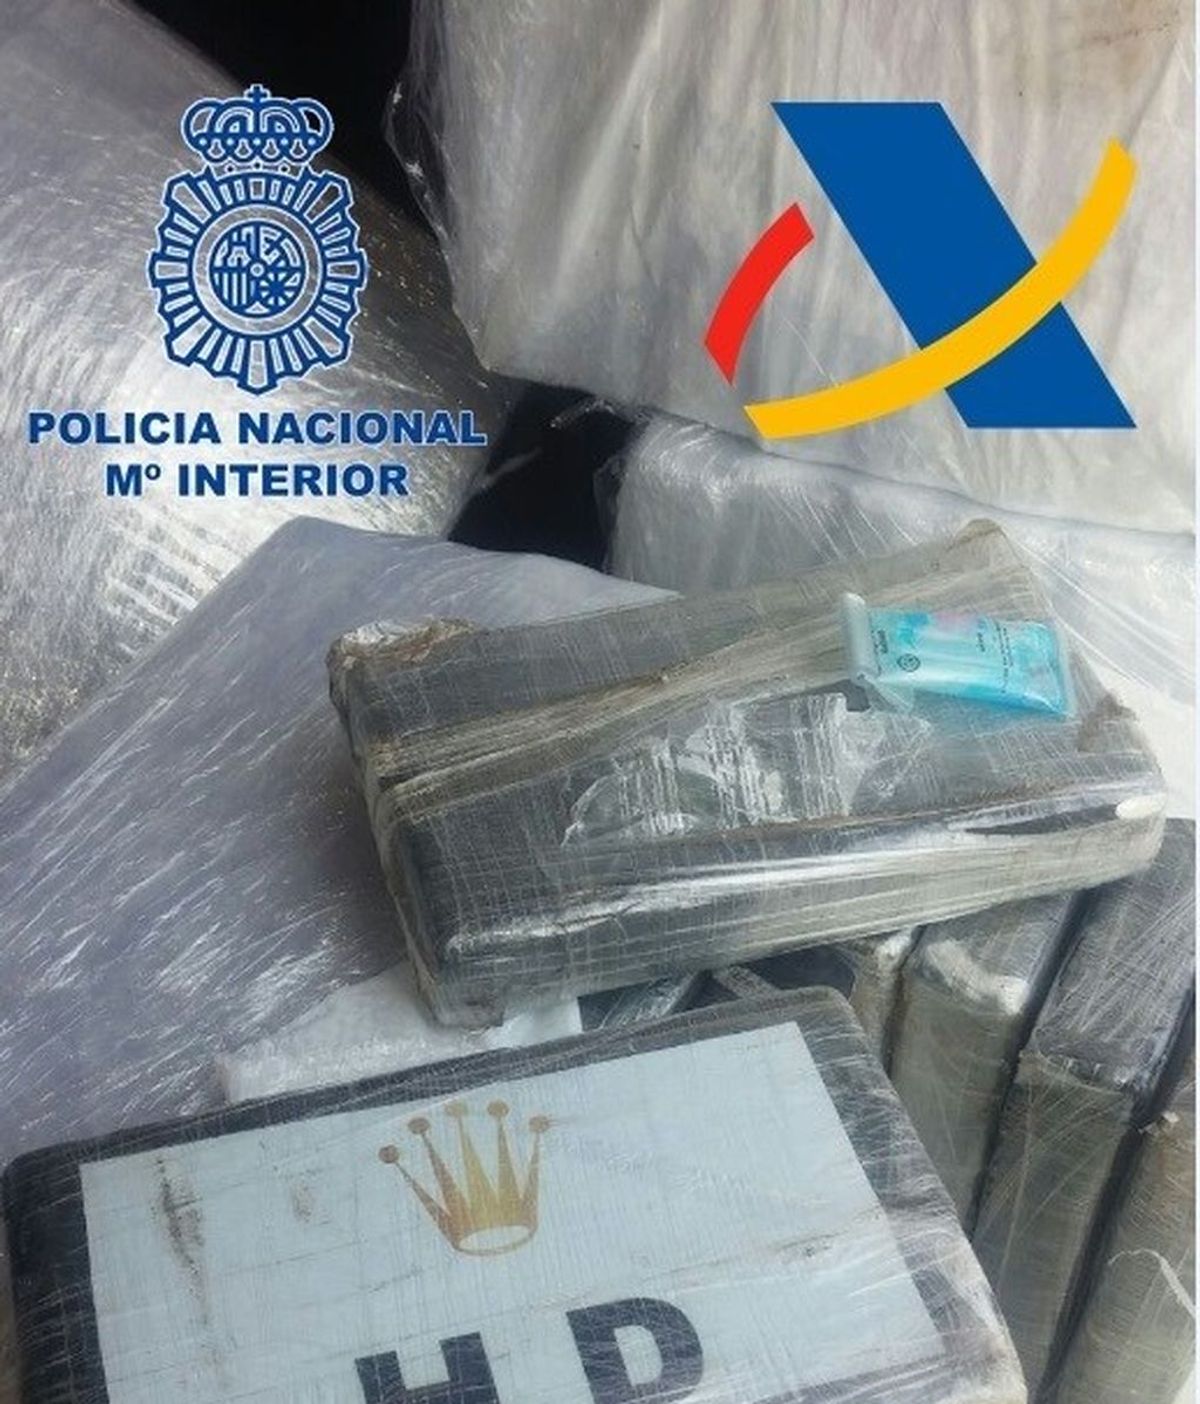 Intervenido un alijo de 680 kilos de cocaína en un contenedor en Barcelona